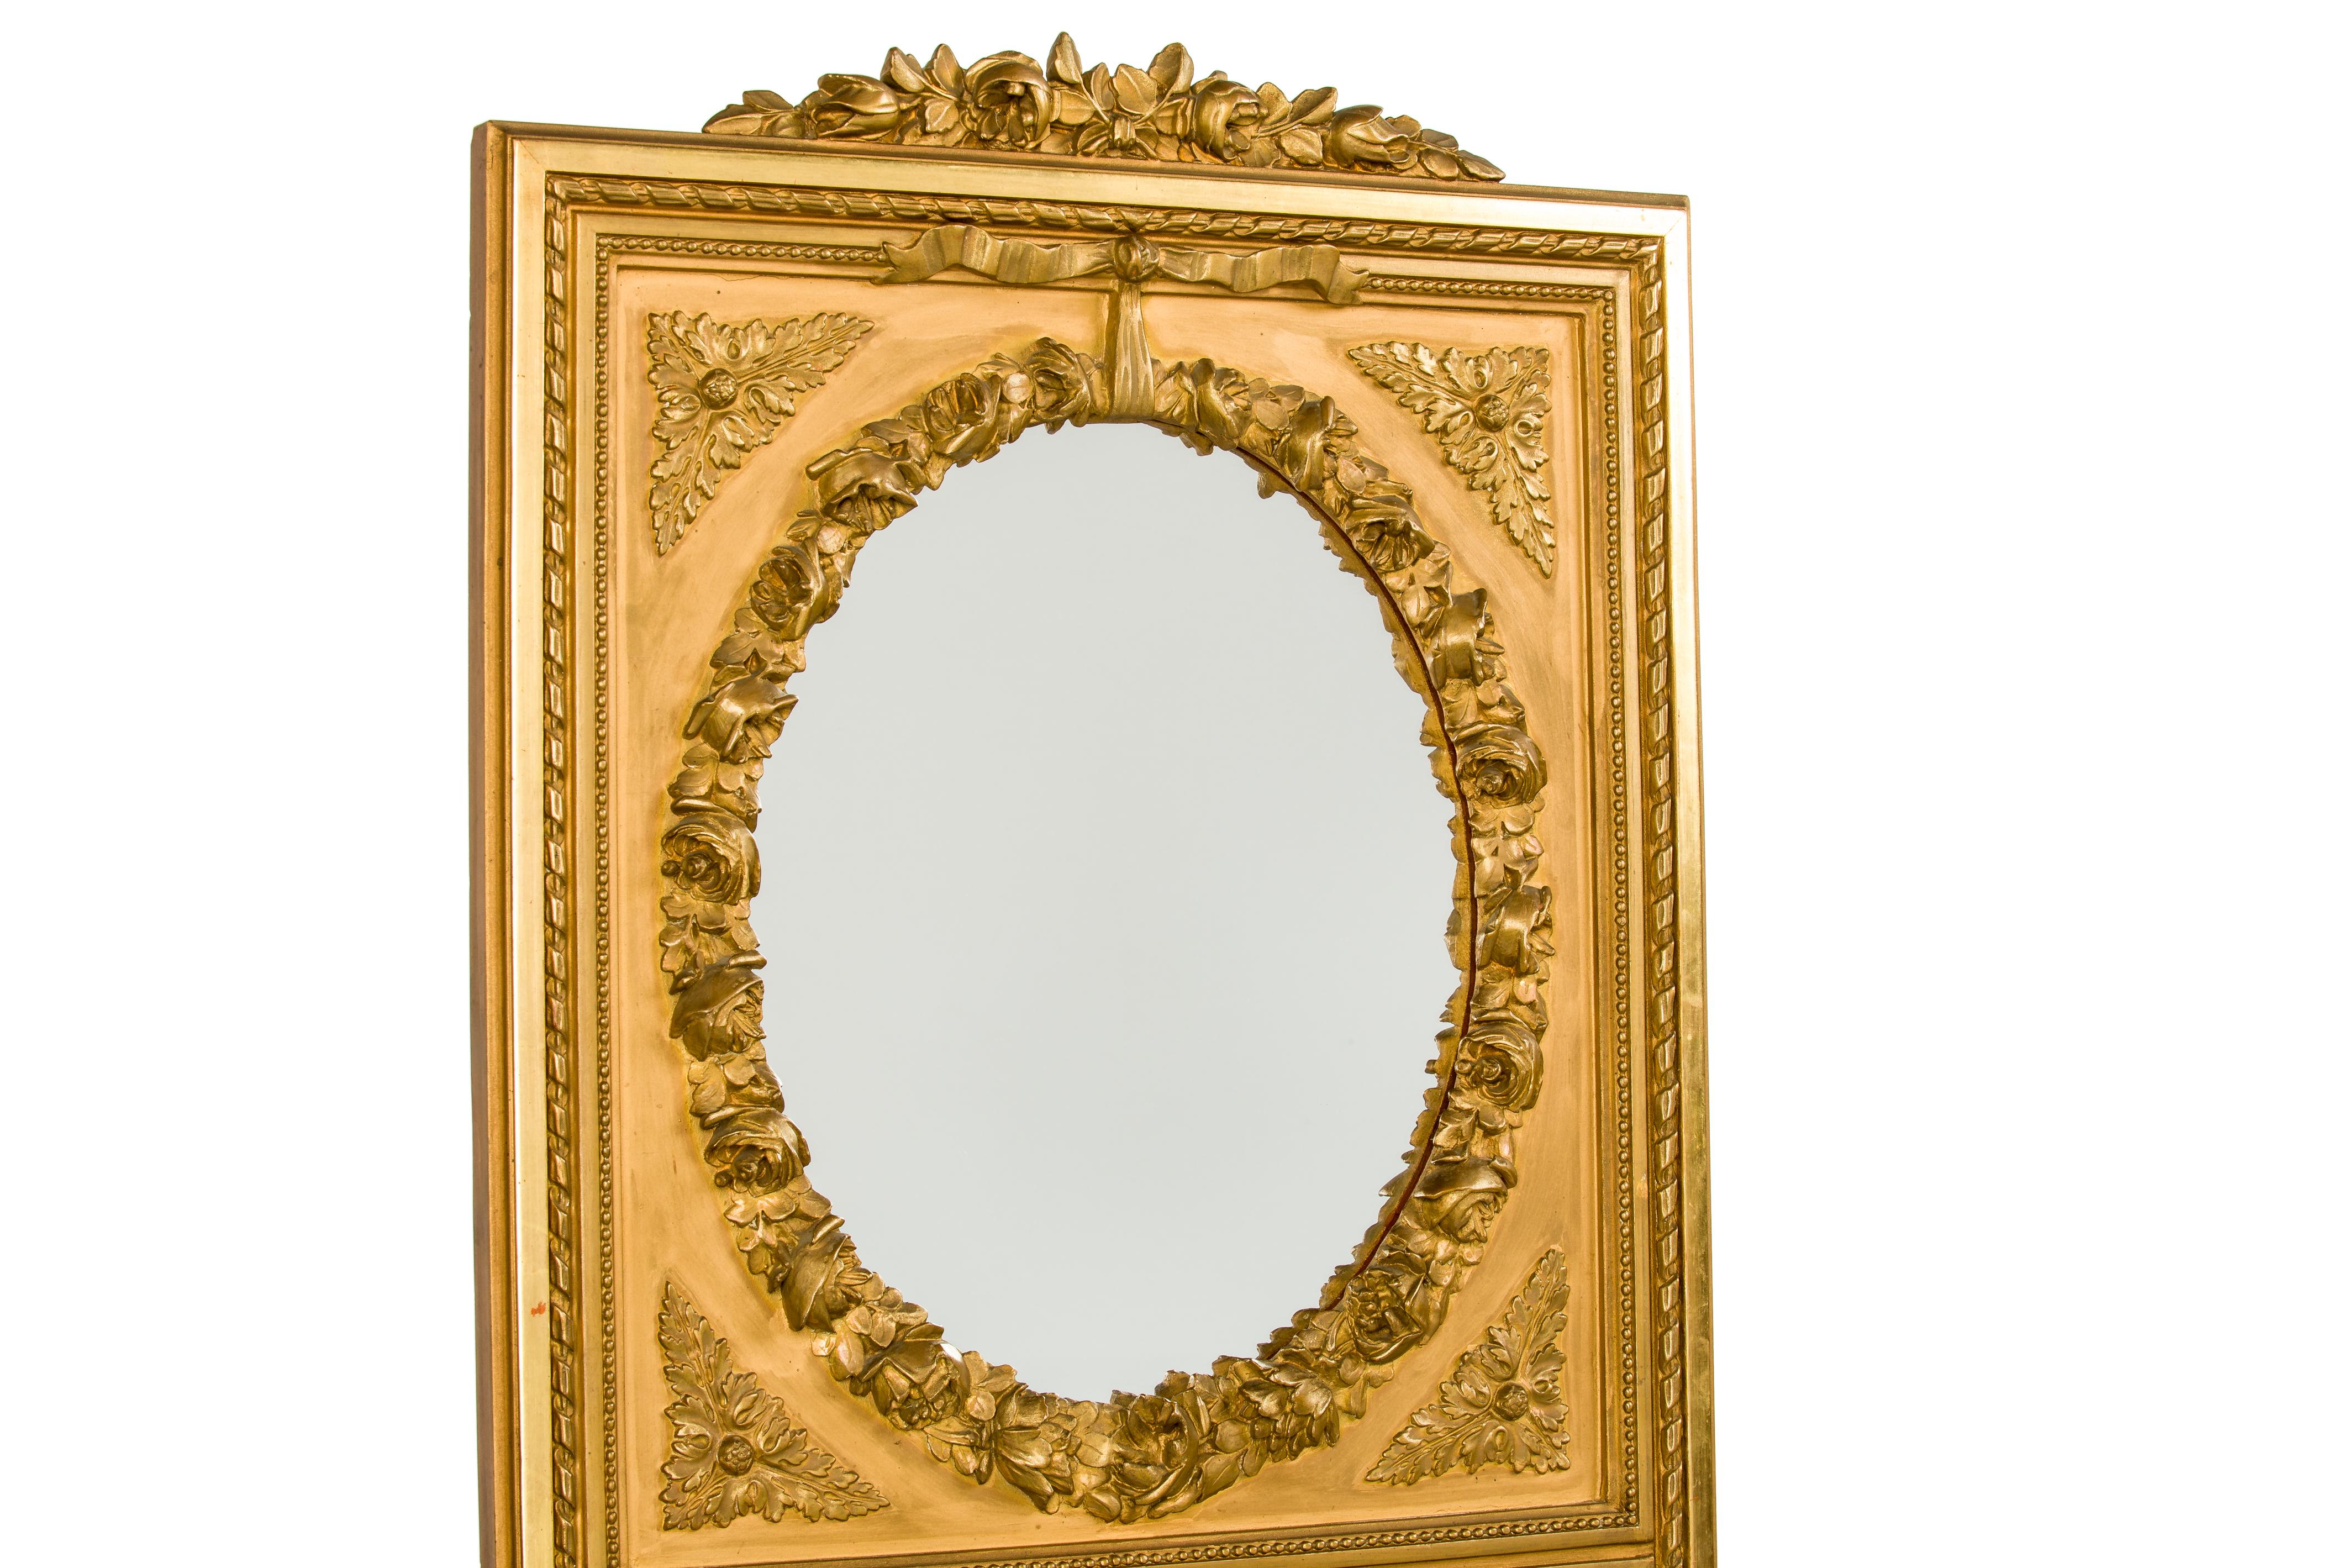 Un très beau et grand miroir de pilier qui a été fabriqué à la fin du 19e siècle dans le nord de la France. Son cadre carré, ses bordures décoratives et son écusson sont typiques du style Louis Seize. Le modeste écusson comporte de belles roses avec